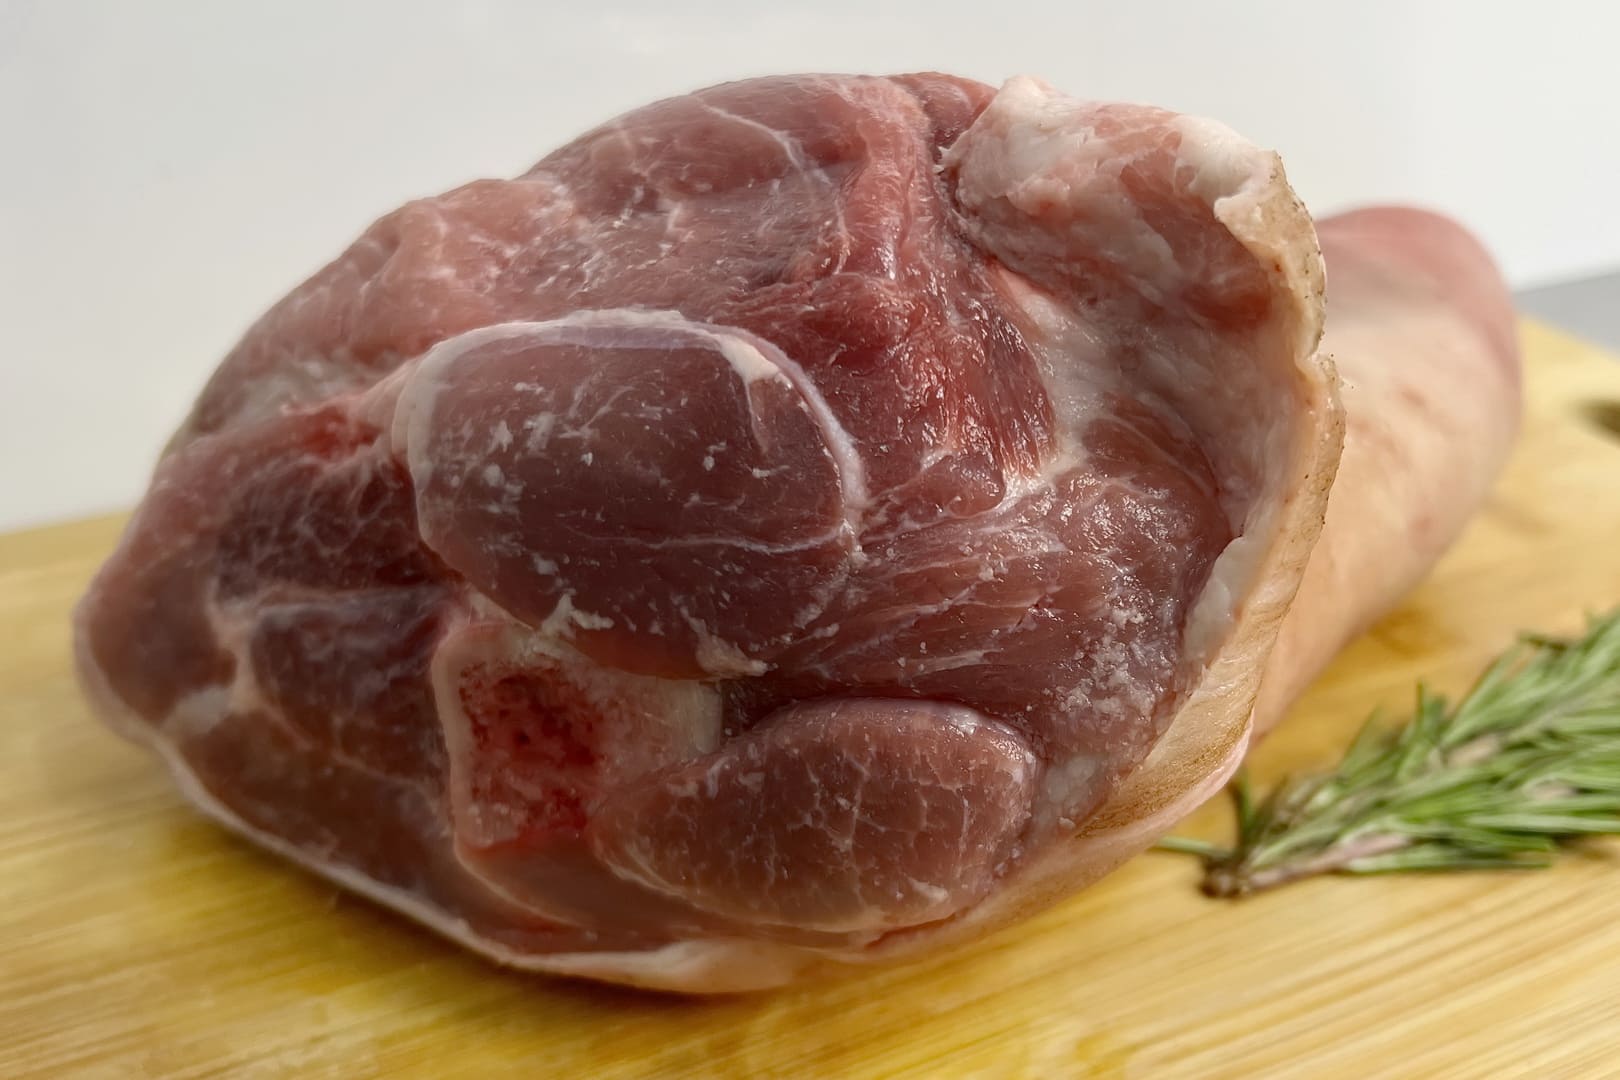 Рулька свиная ~ 1,2 кг: идеальный выбор для любителей мясных деликатесов. Закажите  интернет-магазине свинину, богатую белком с плотной структурой и насыщенным мясным вкусом! - Фото 3